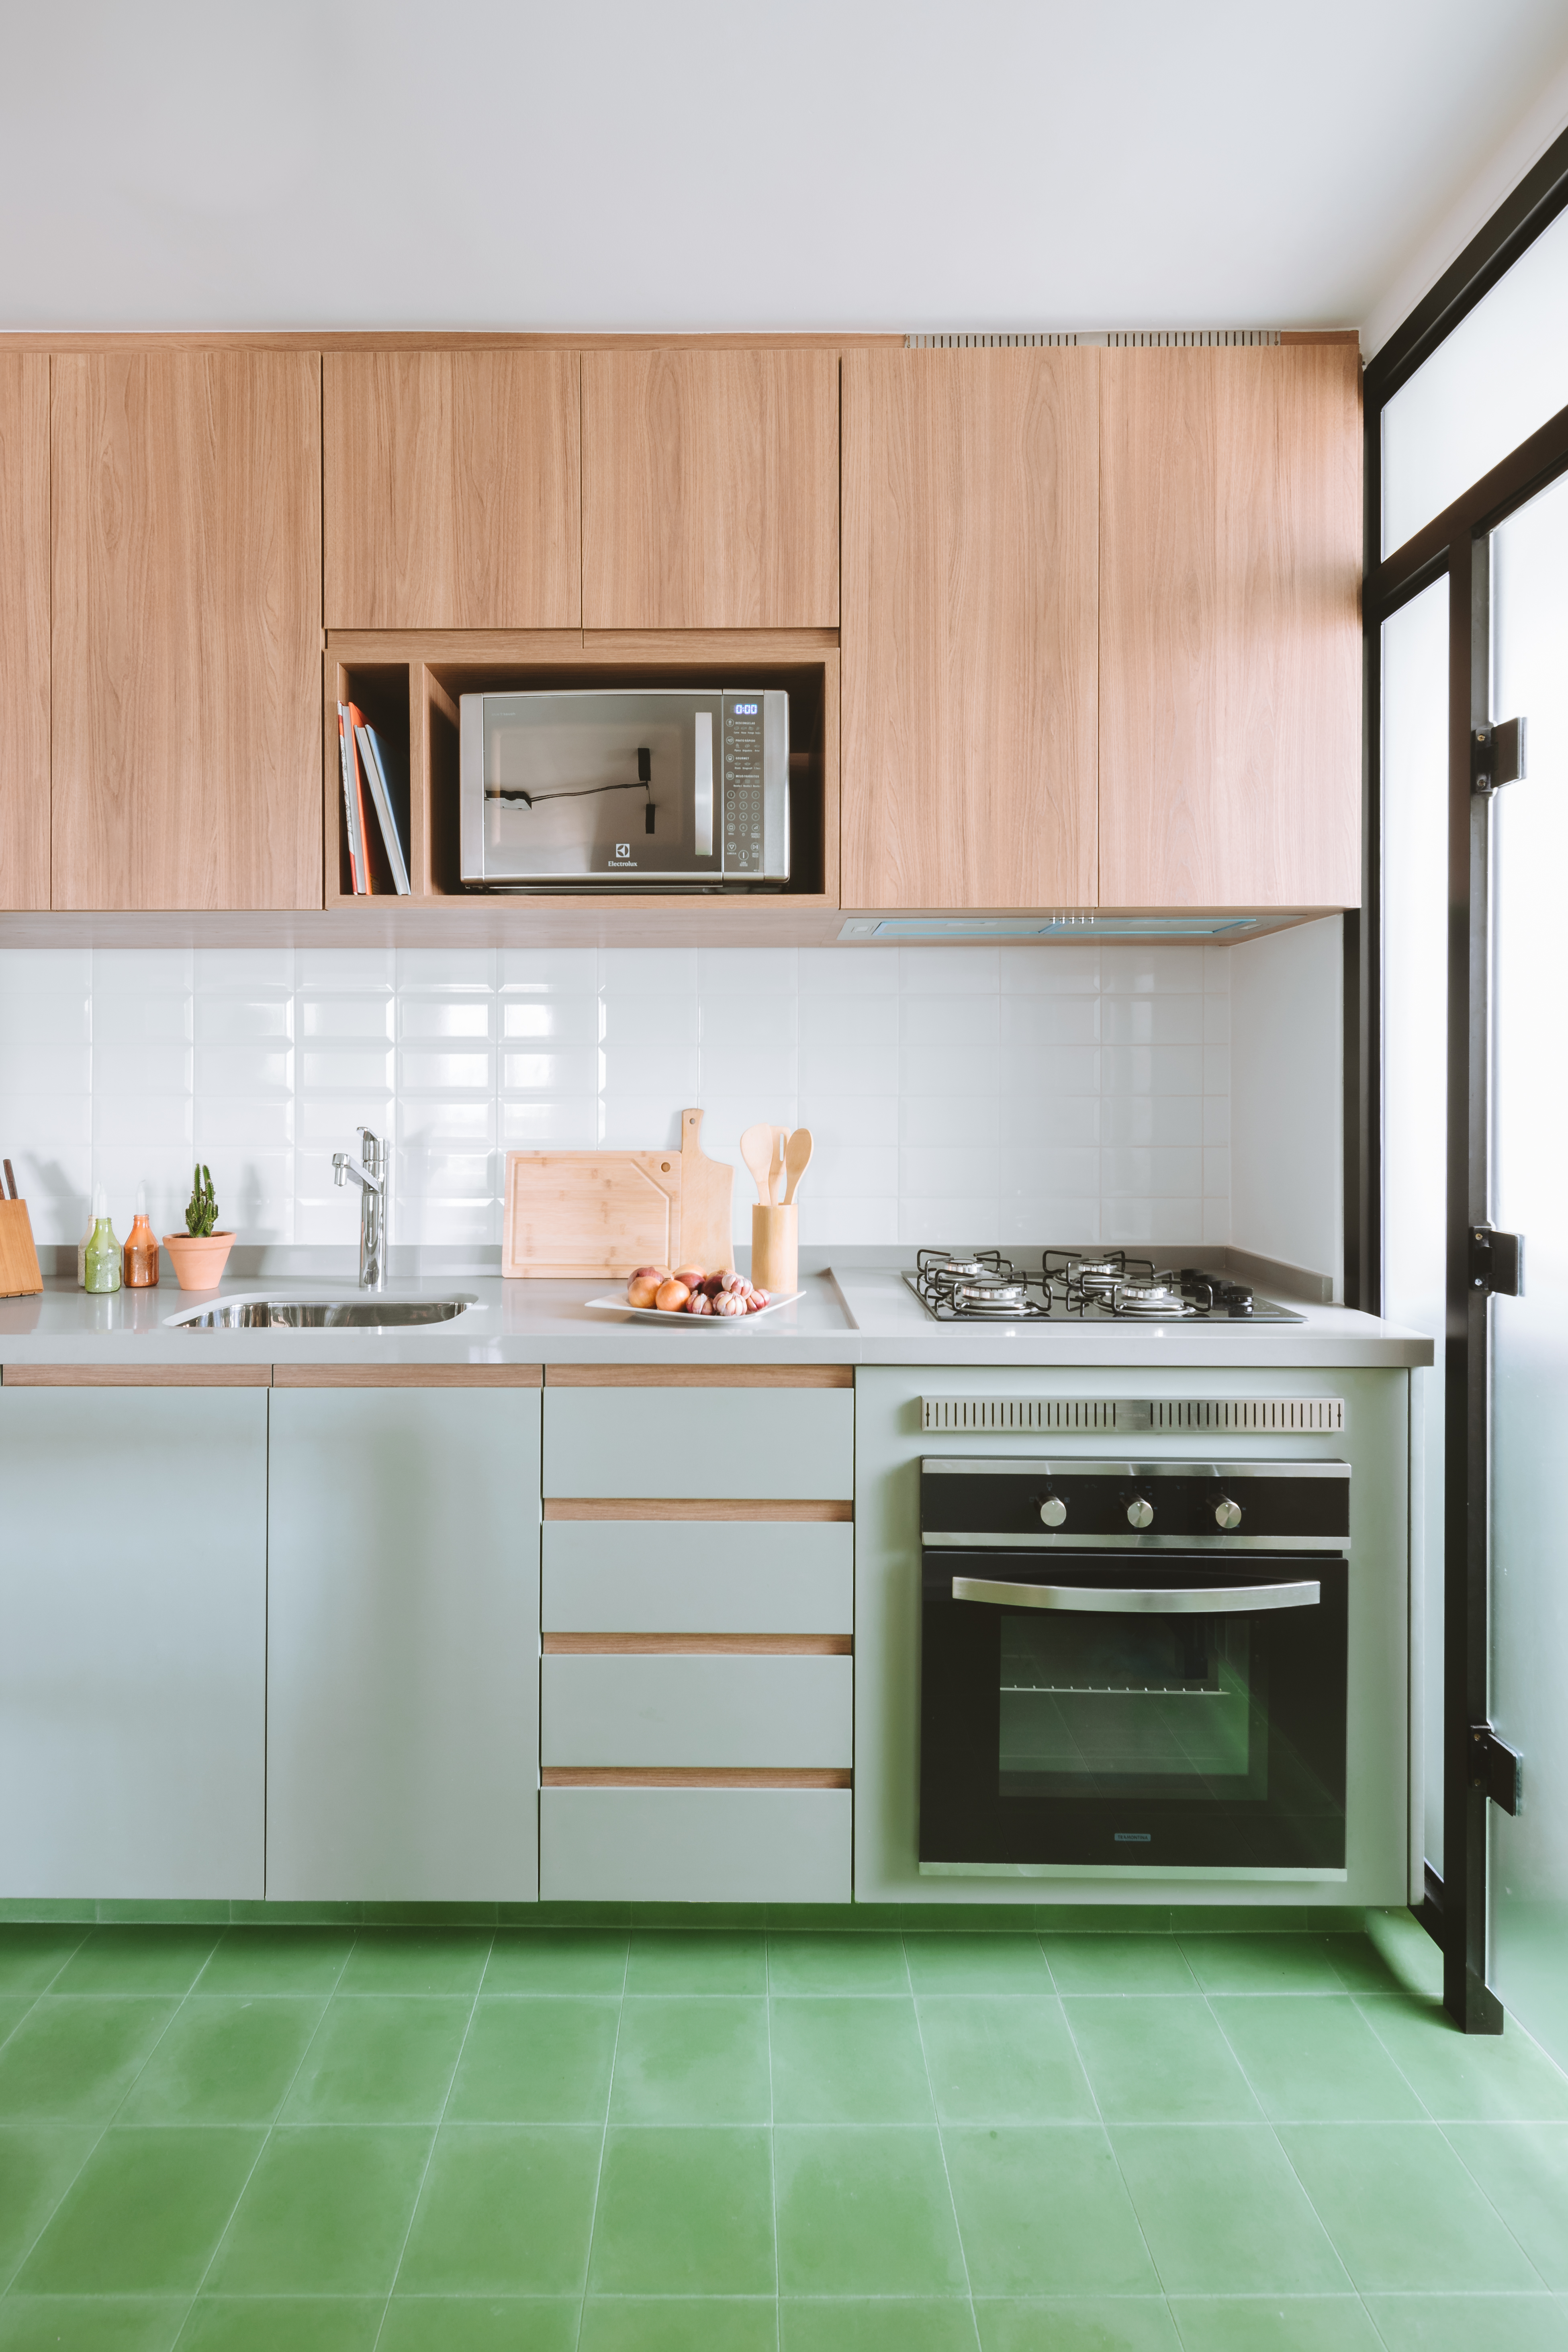 Apê industrial de 75 m² tem cozinha verde menta com bancada de cimento